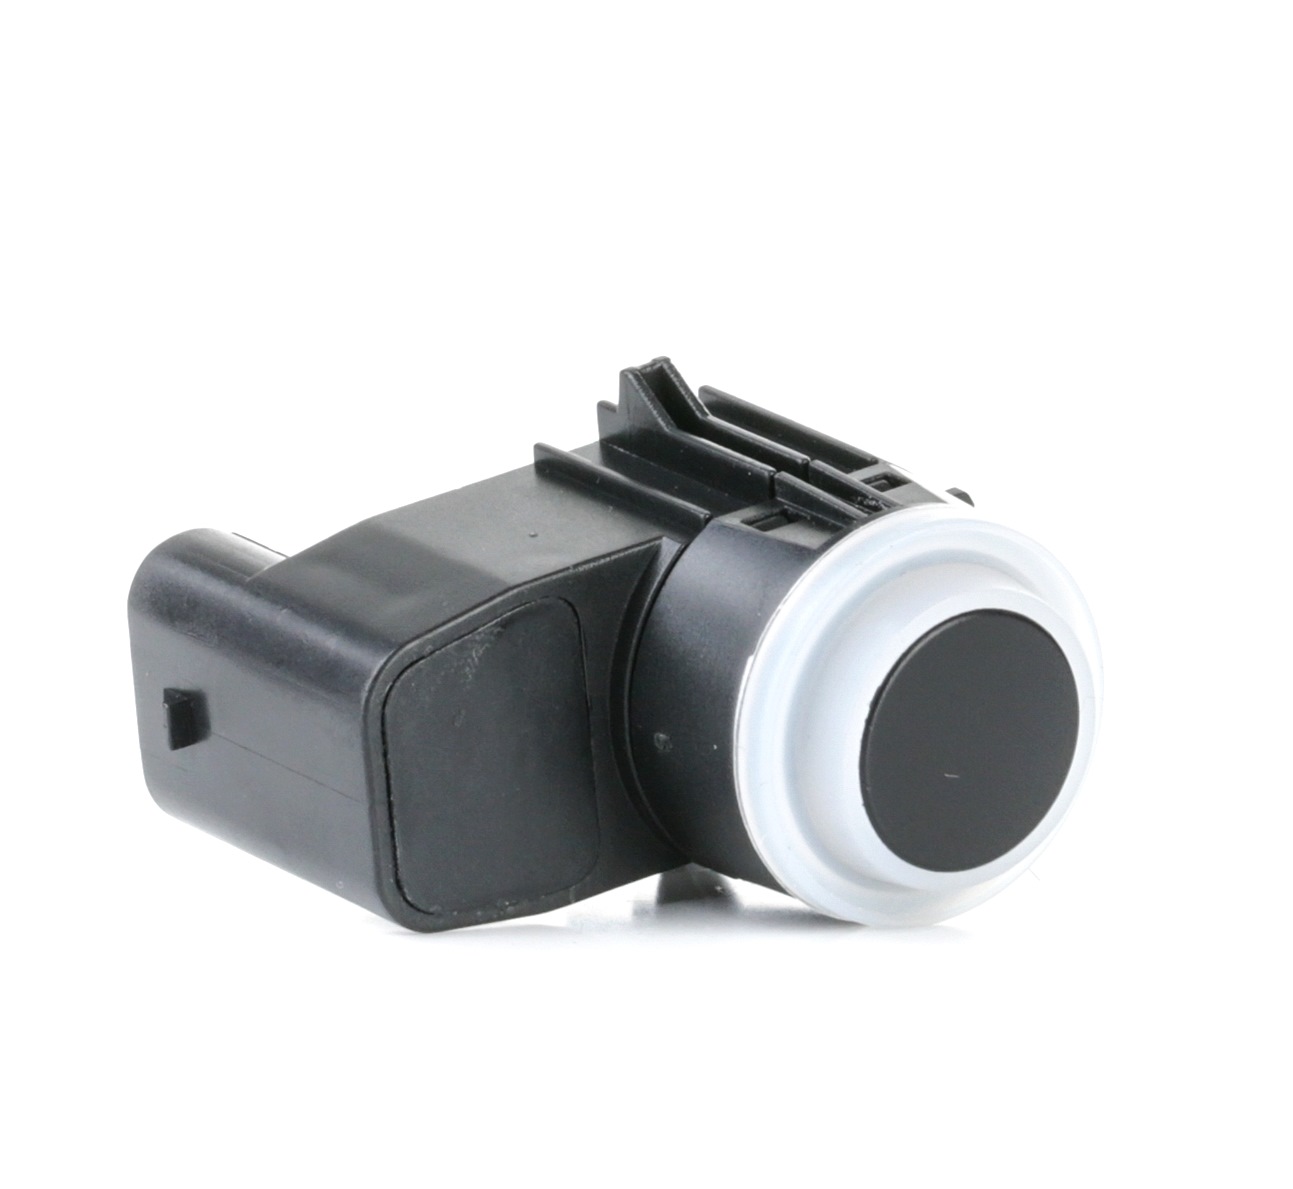 STARK SKPDS-1420085 Parking sensor Rear, black, Ultrasonic Sensor